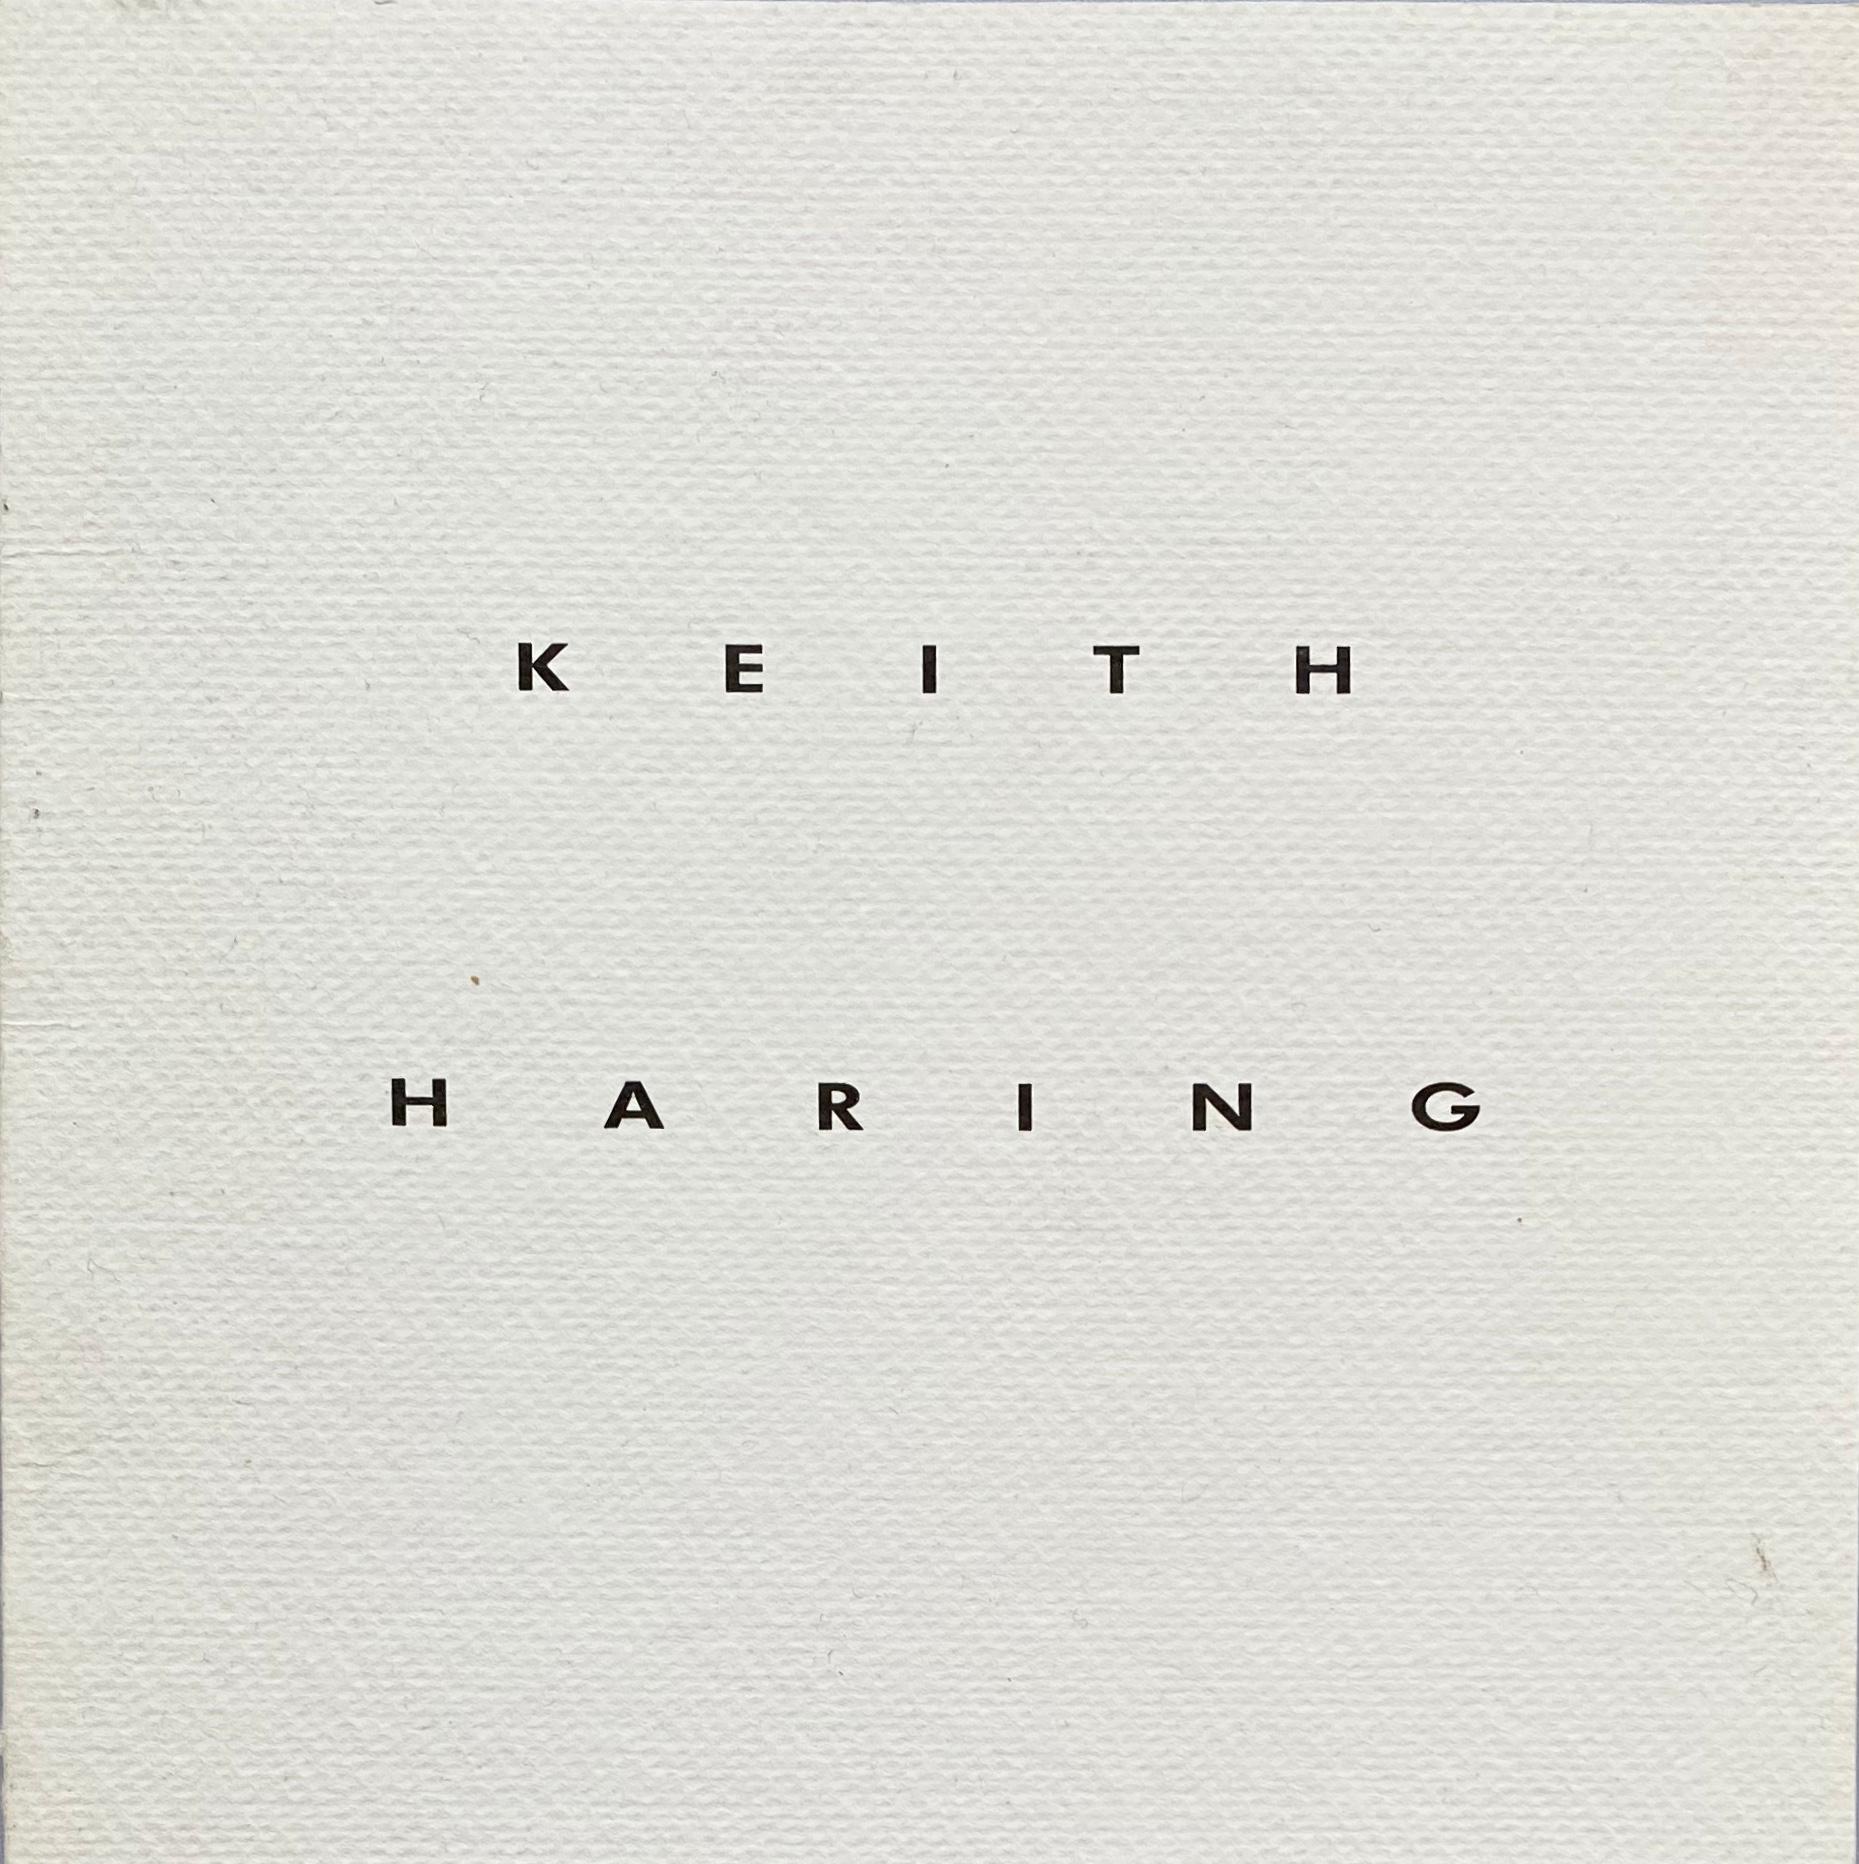 Announcement commémoratif Keith Haring de 1990 (affiches d'impression de Keith Haring) - Pop Art Print par (after) Keith Haring